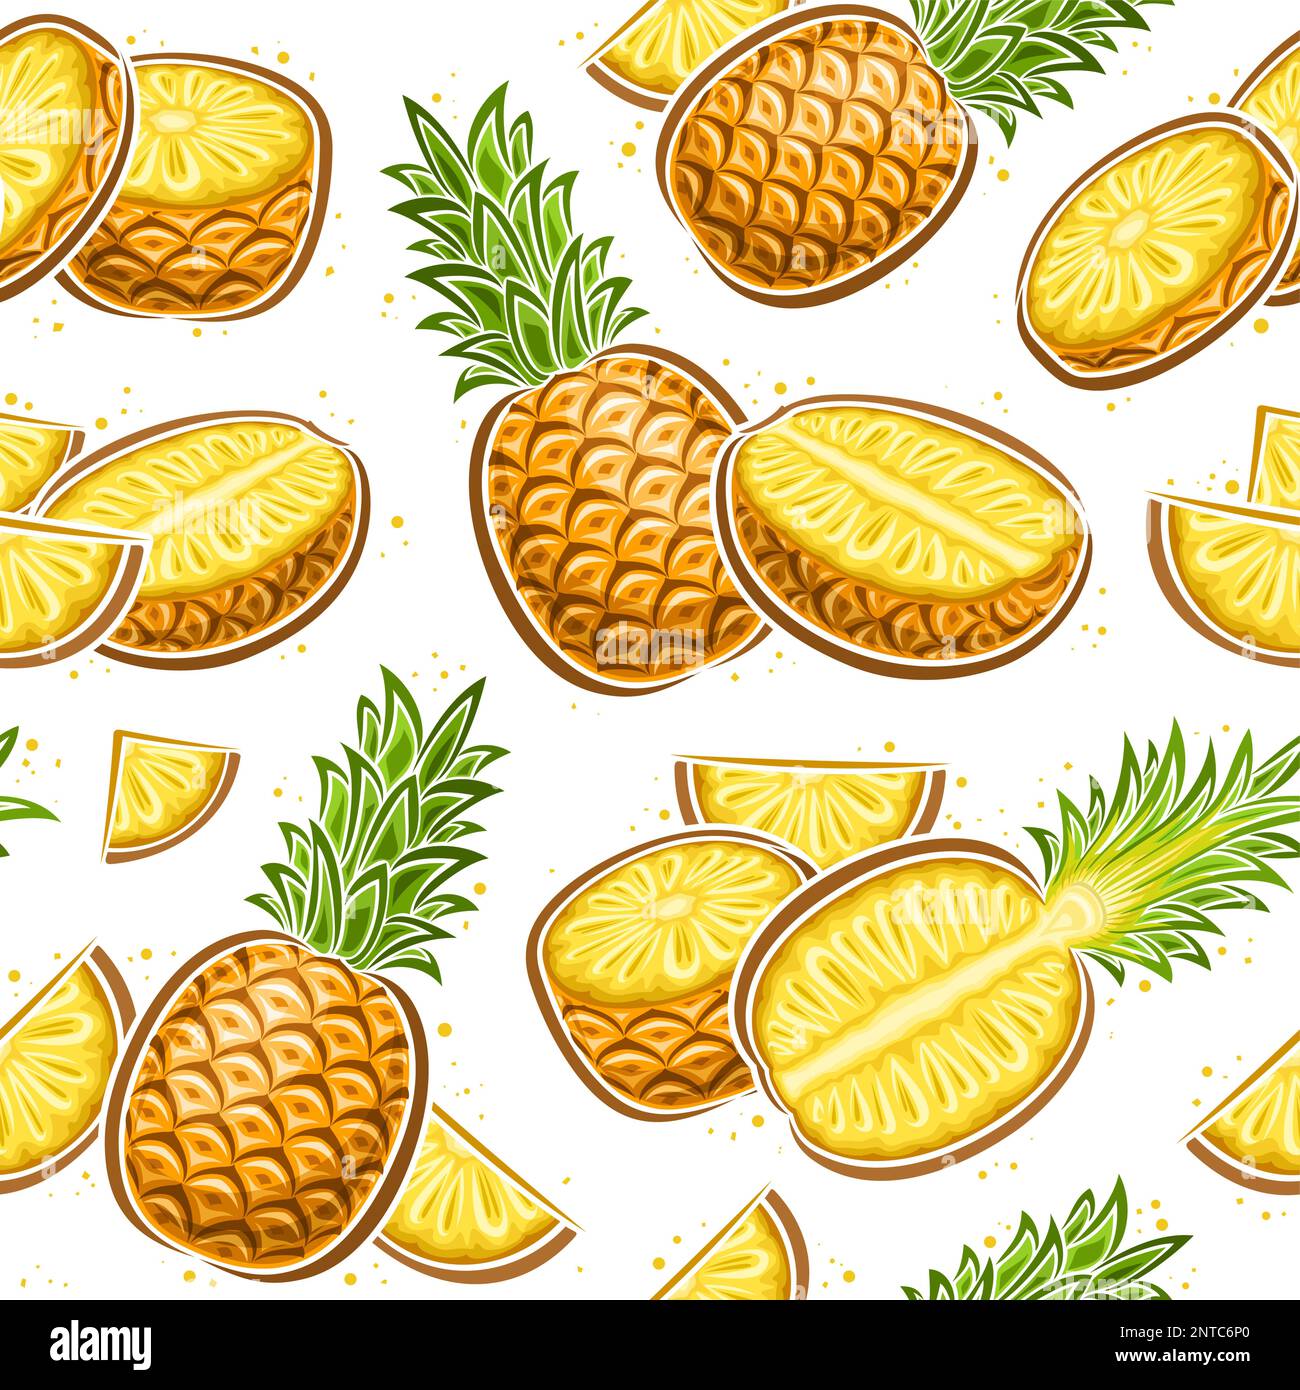 Vector ananas senza cuciture modello, quadrato sfondo ripetizione con illustrazione di ananas fermo vita con foglie verdi per carta da imballaggio, gruppo di f Illustrazione Vettoriale